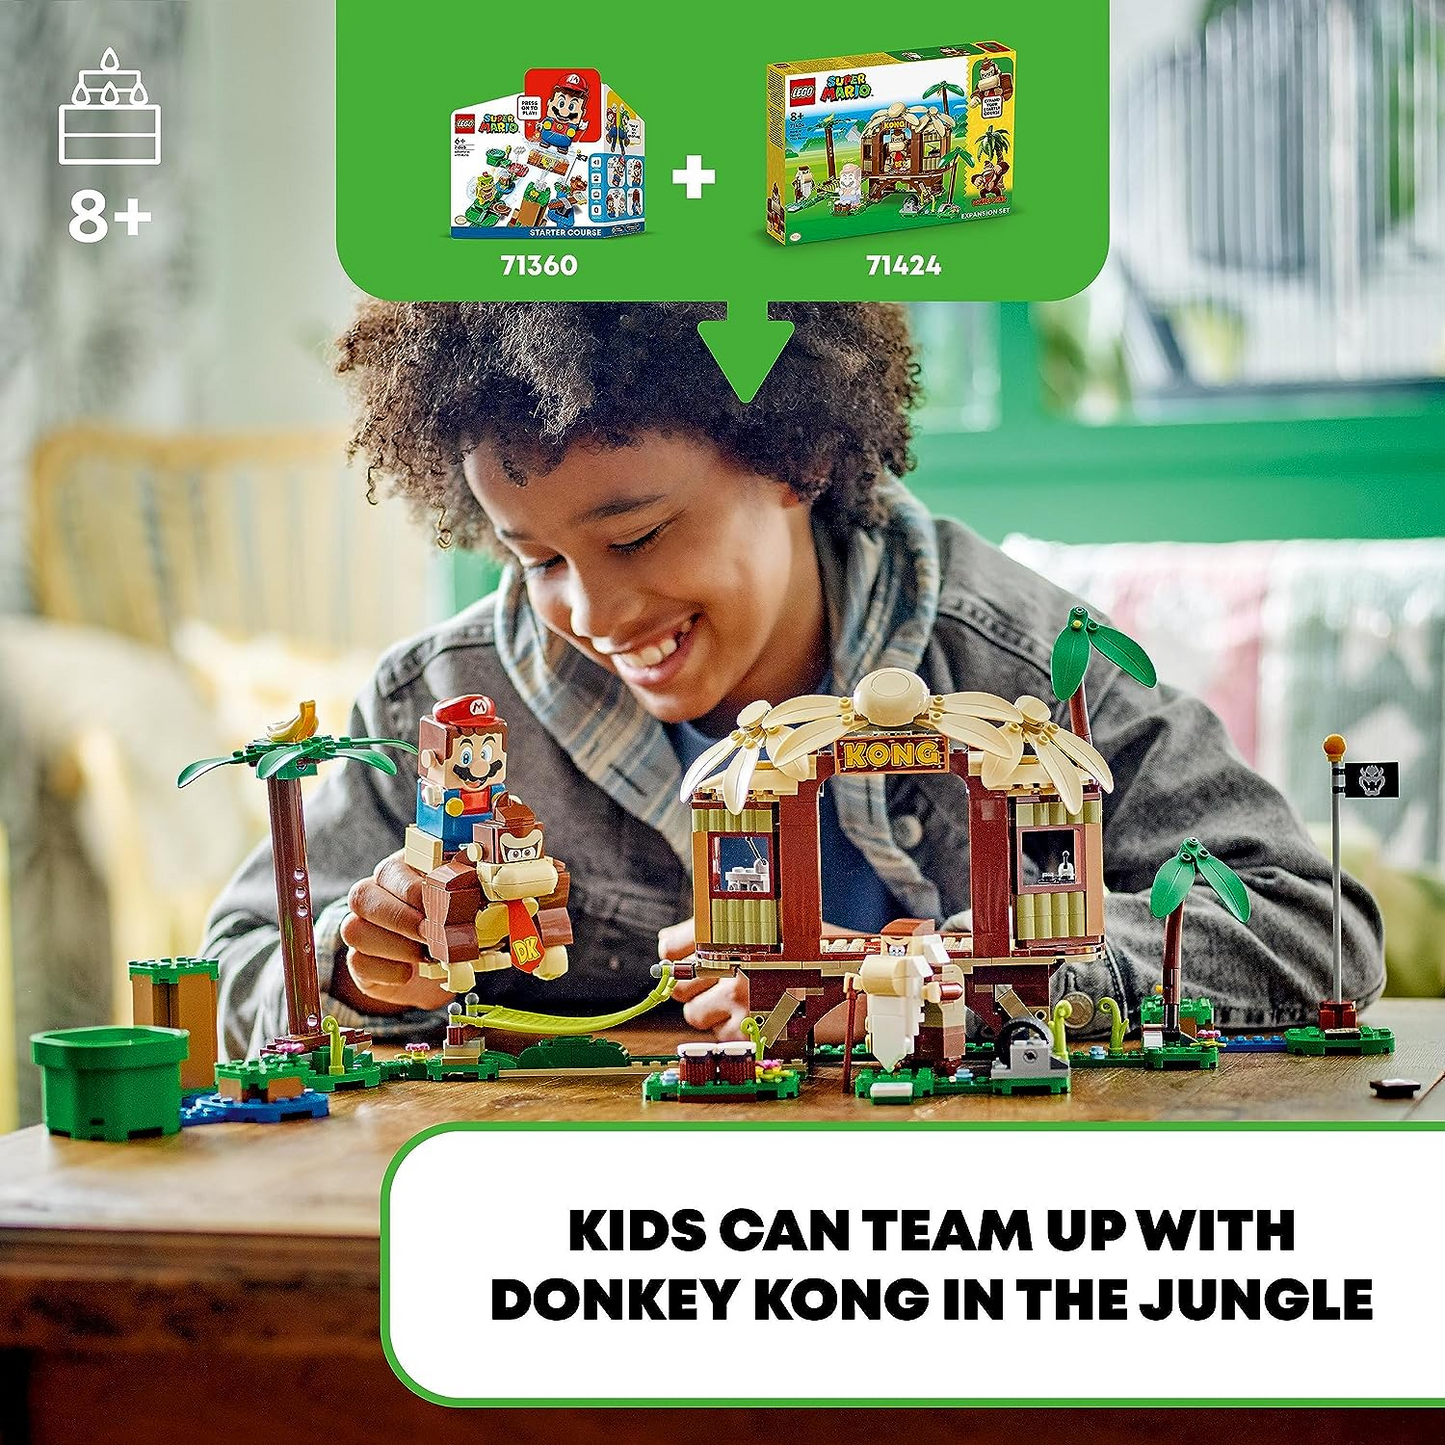 LEGO  71424 Conjunto de Expansão Casa na Árvore de Super Mario Donkey Kong, Brinquedo Construível Casa na Árvore com 2 Figuras de Personagem, Playset para Crianças, Meninos e Meninas de 8 anos ou mais, para Combinar com um Curso Iniciante